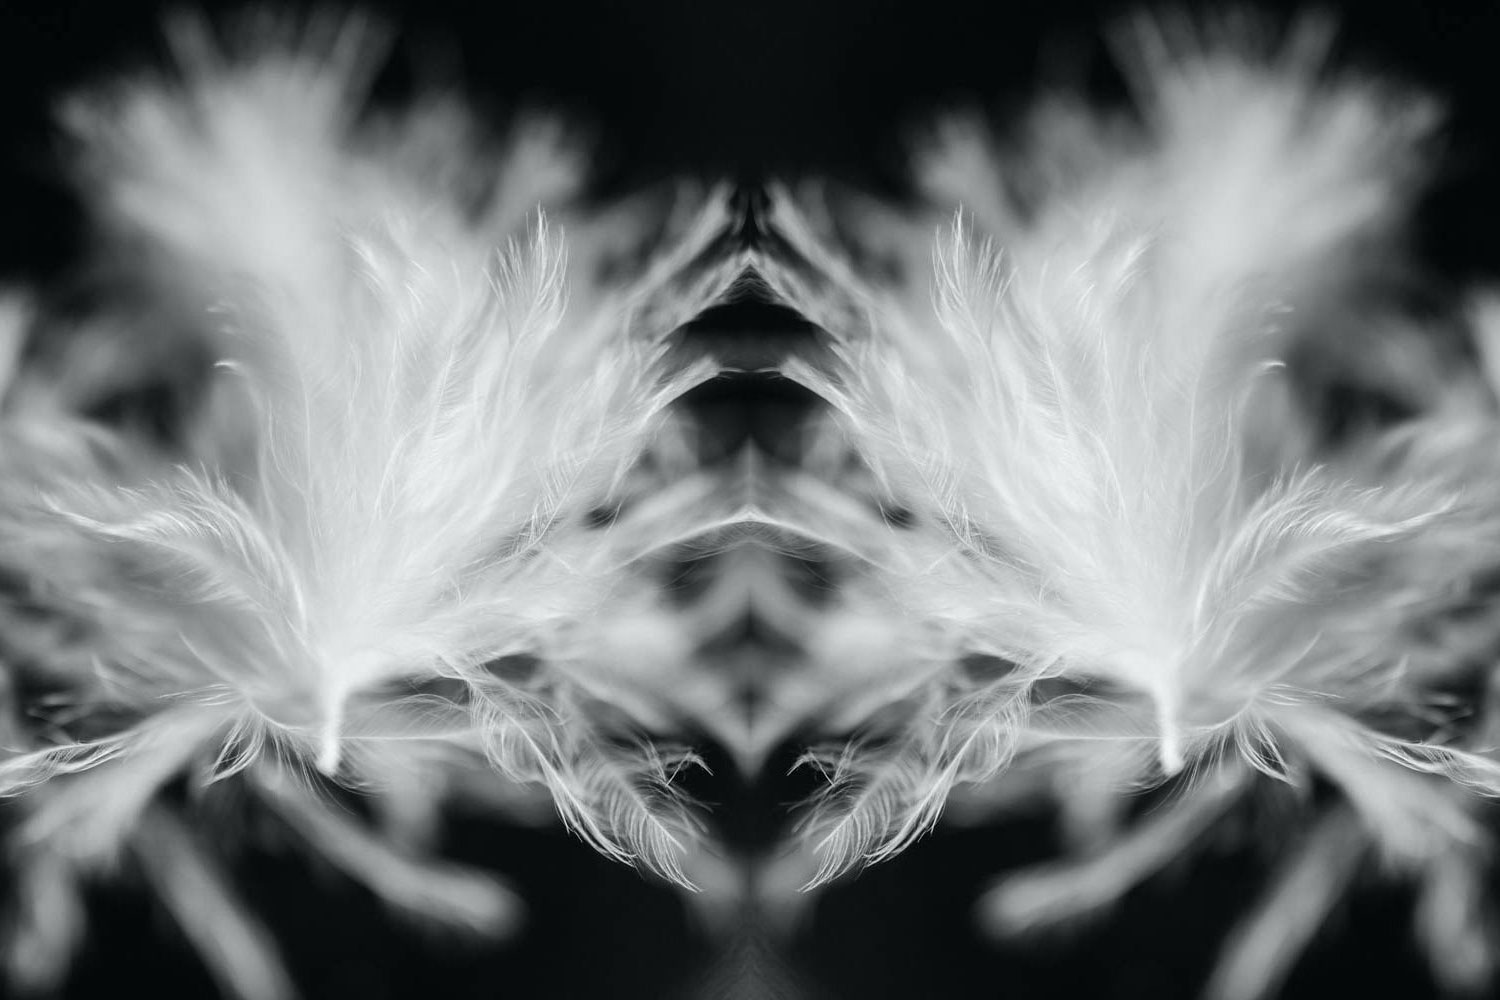 Kaleidoscope photo of bird feathers.